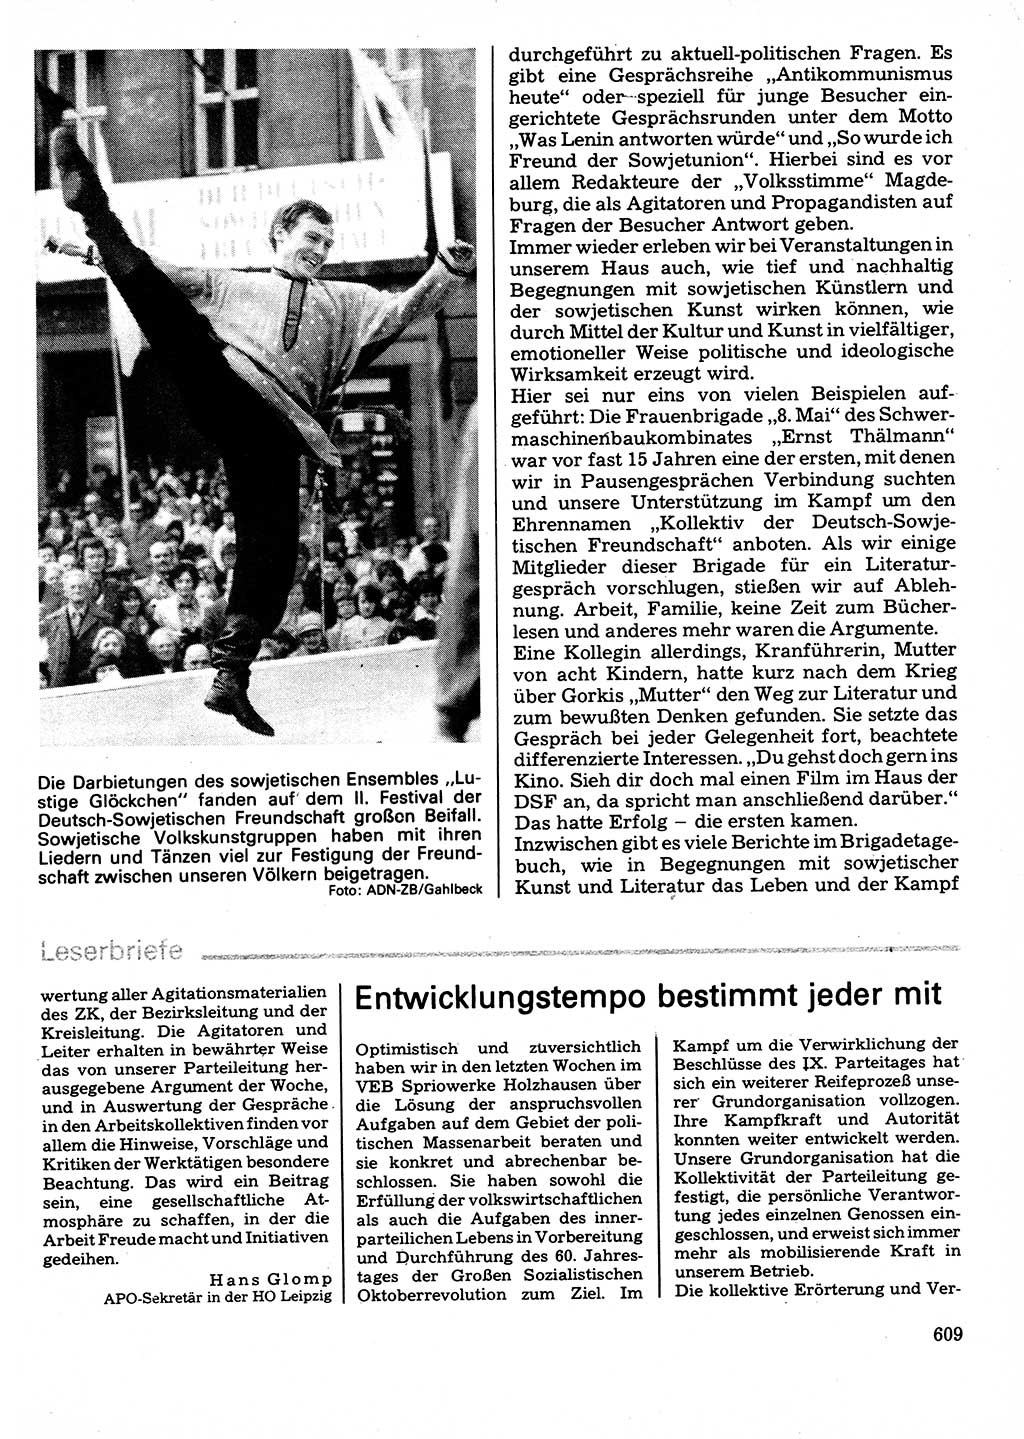 Neuer Weg (NW), Organ des Zentralkomitees (ZK) der SED (Sozialistische Einheitspartei Deutschlands) für Fragen des Parteilebens, 32. Jahrgang [Deutsche Demokratische Republik (DDR)] 1977, Seite 609 (NW ZK SED DDR 1977, S. 609)